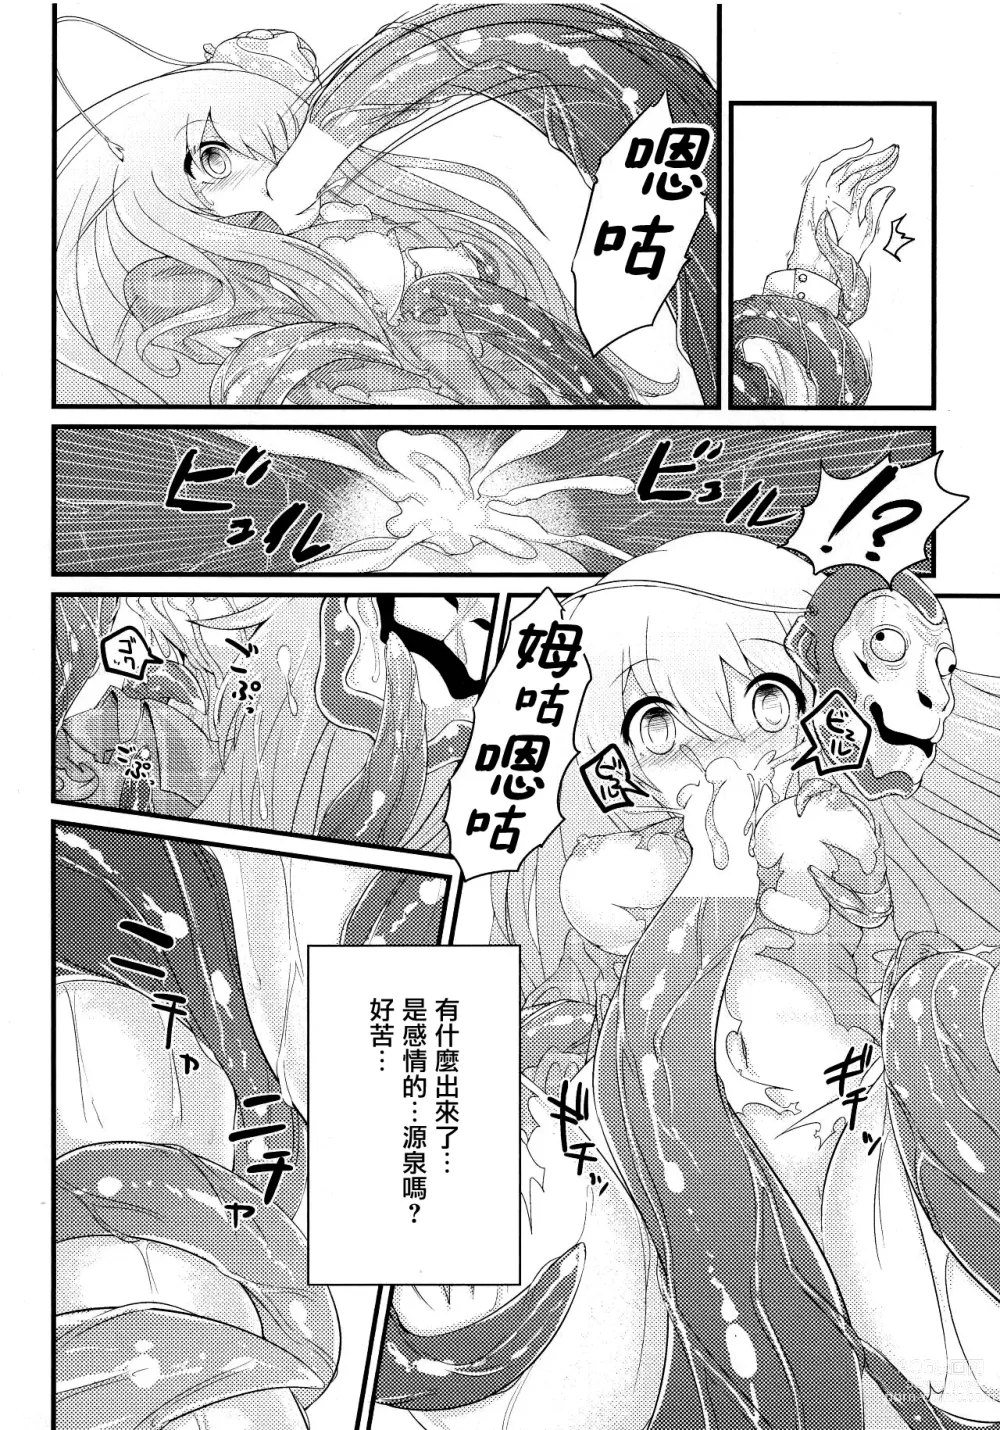 Page 27 of doujinshi Kokorozukuri